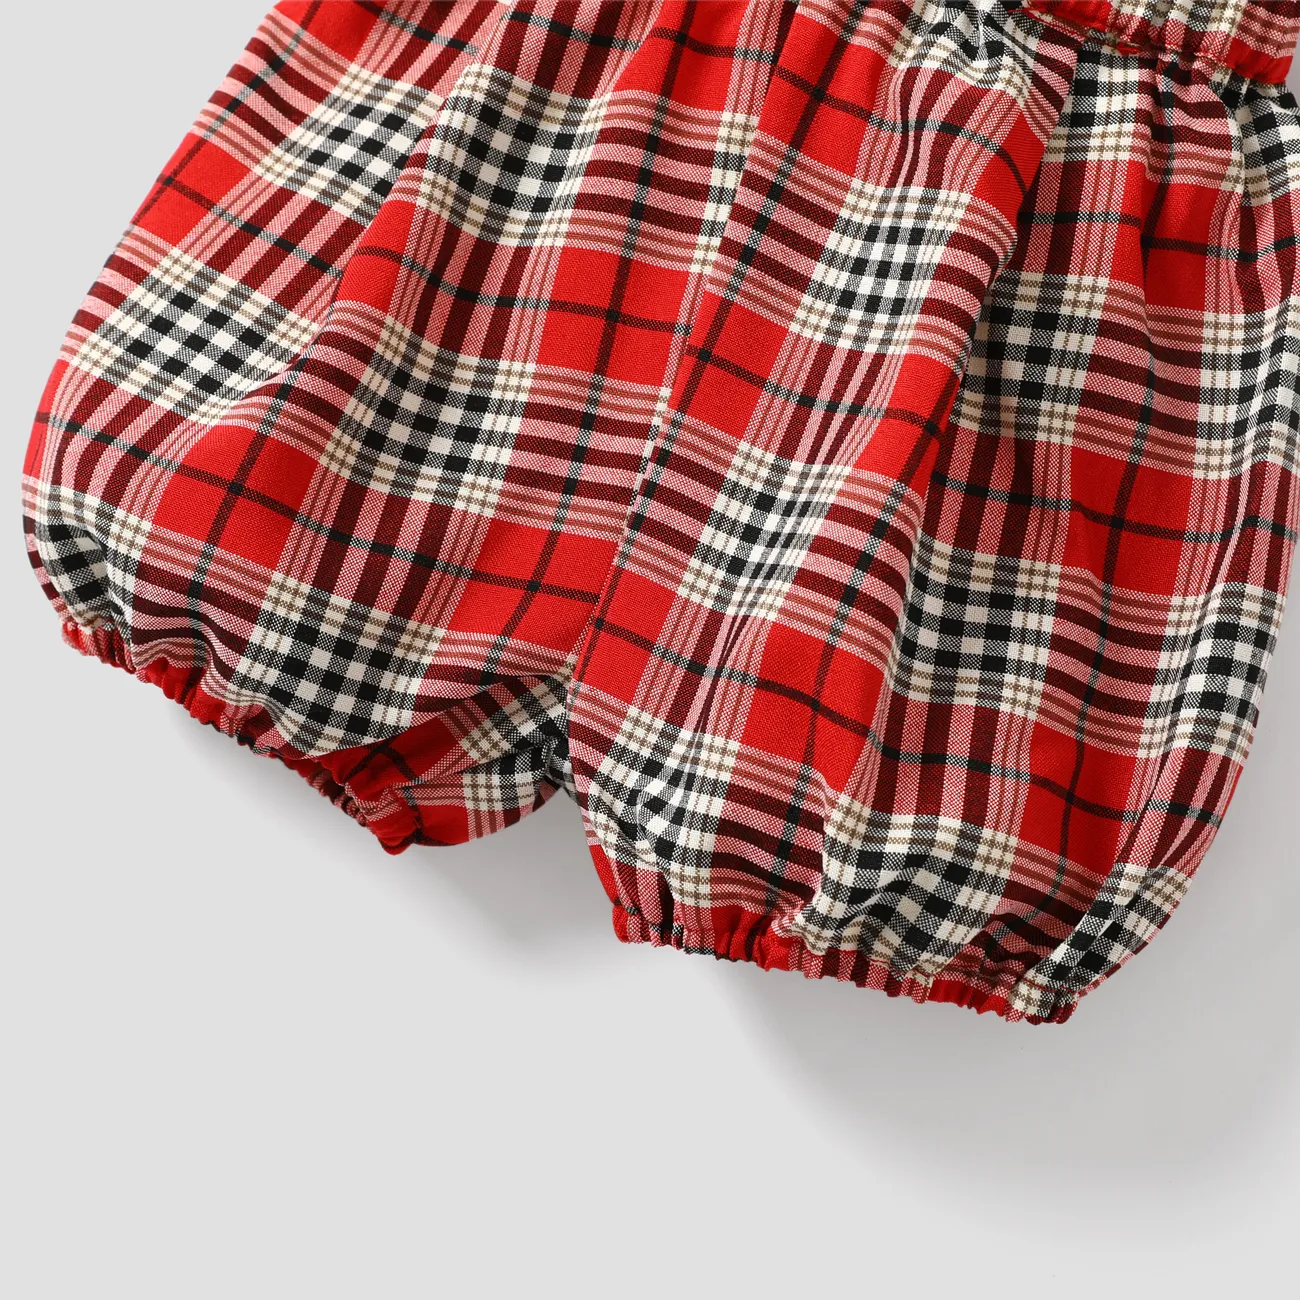 2pcs Baby Boy Elegant Grid Set with Shirt Collar REDWHITE big image 1